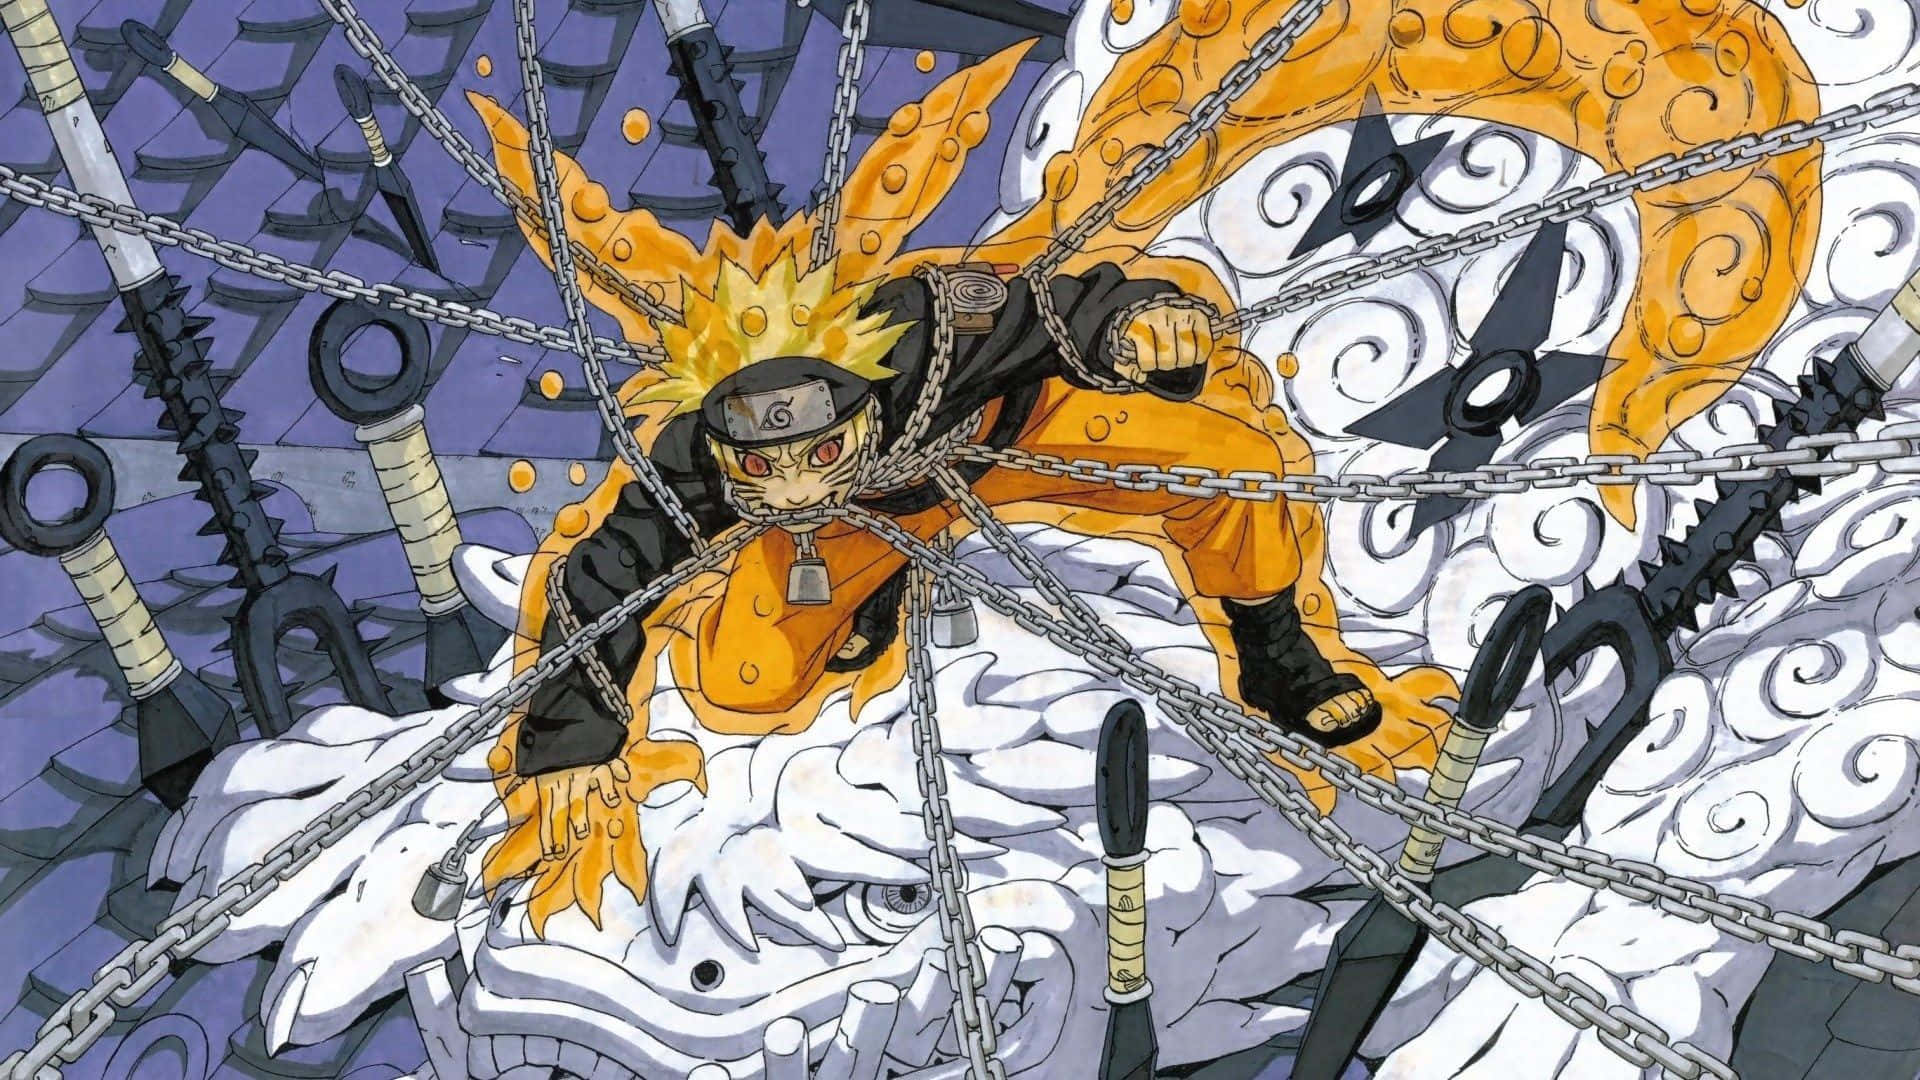 Narutomanga Nio-svans Chakra Best Chain Would Be Translated To Naruto Manga Nio-svans Chakra Bestkedja. Wallpaper